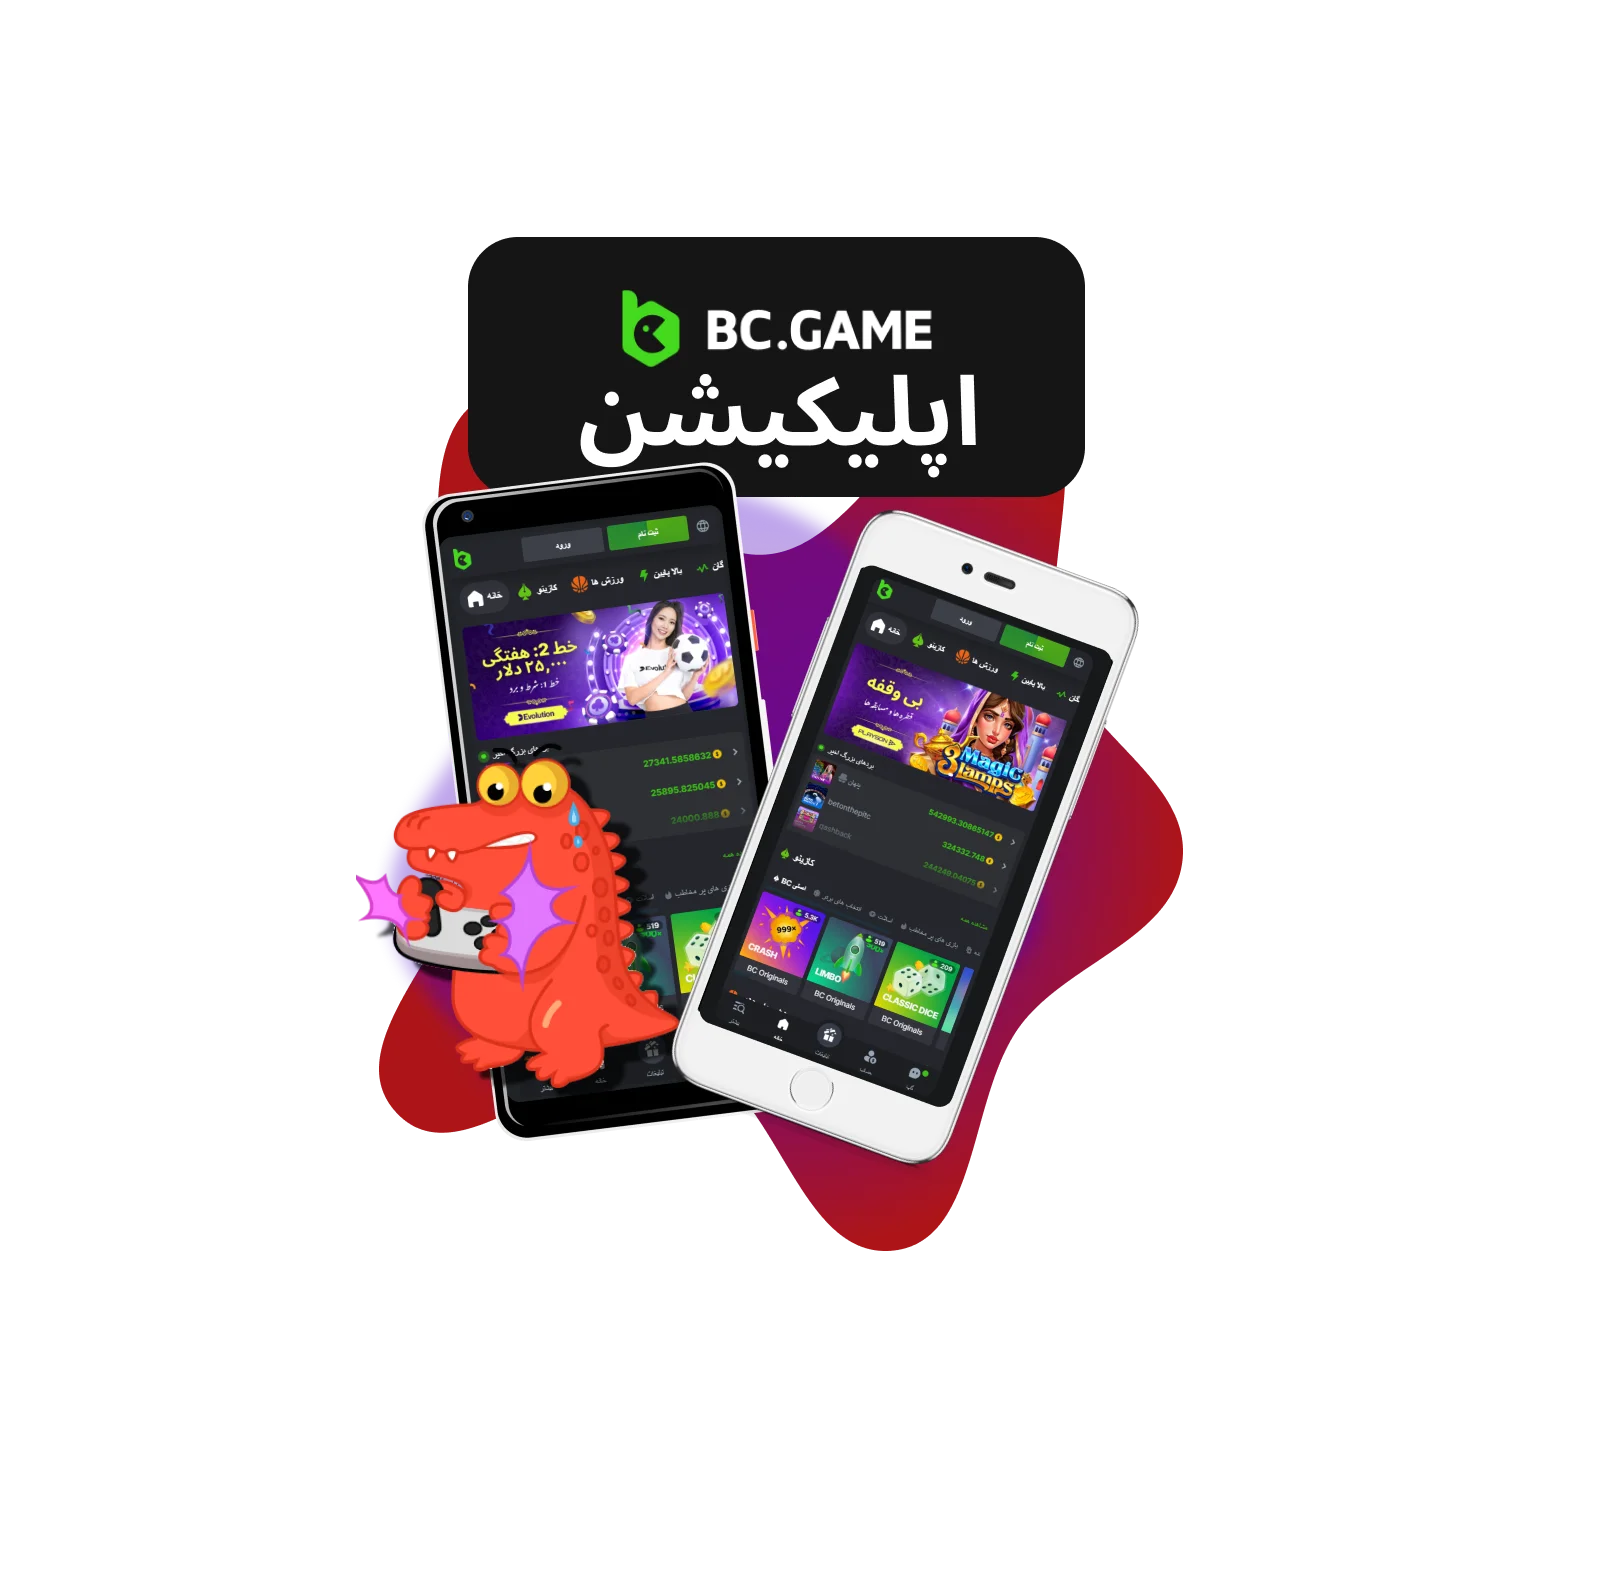 بنر برنامه BC.Game برای ایران، نمایش رابط کاربری برنامه موبایل با تمرکز بر طراحی کاربرپسند و دسترسی برای کاربران ایرانی.